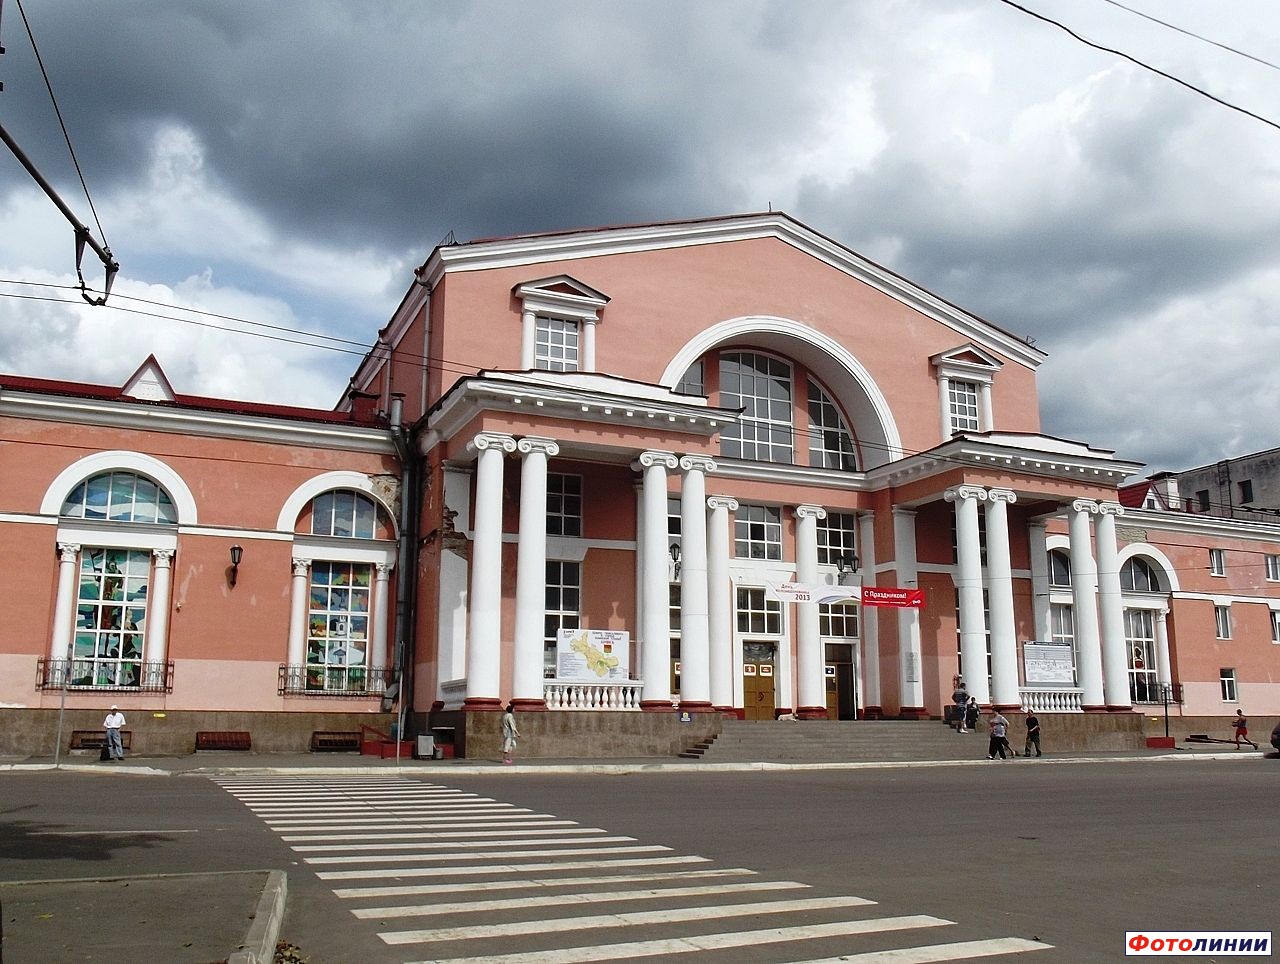 Железнодорожный вокзал Брянск-Орловский, Брянск